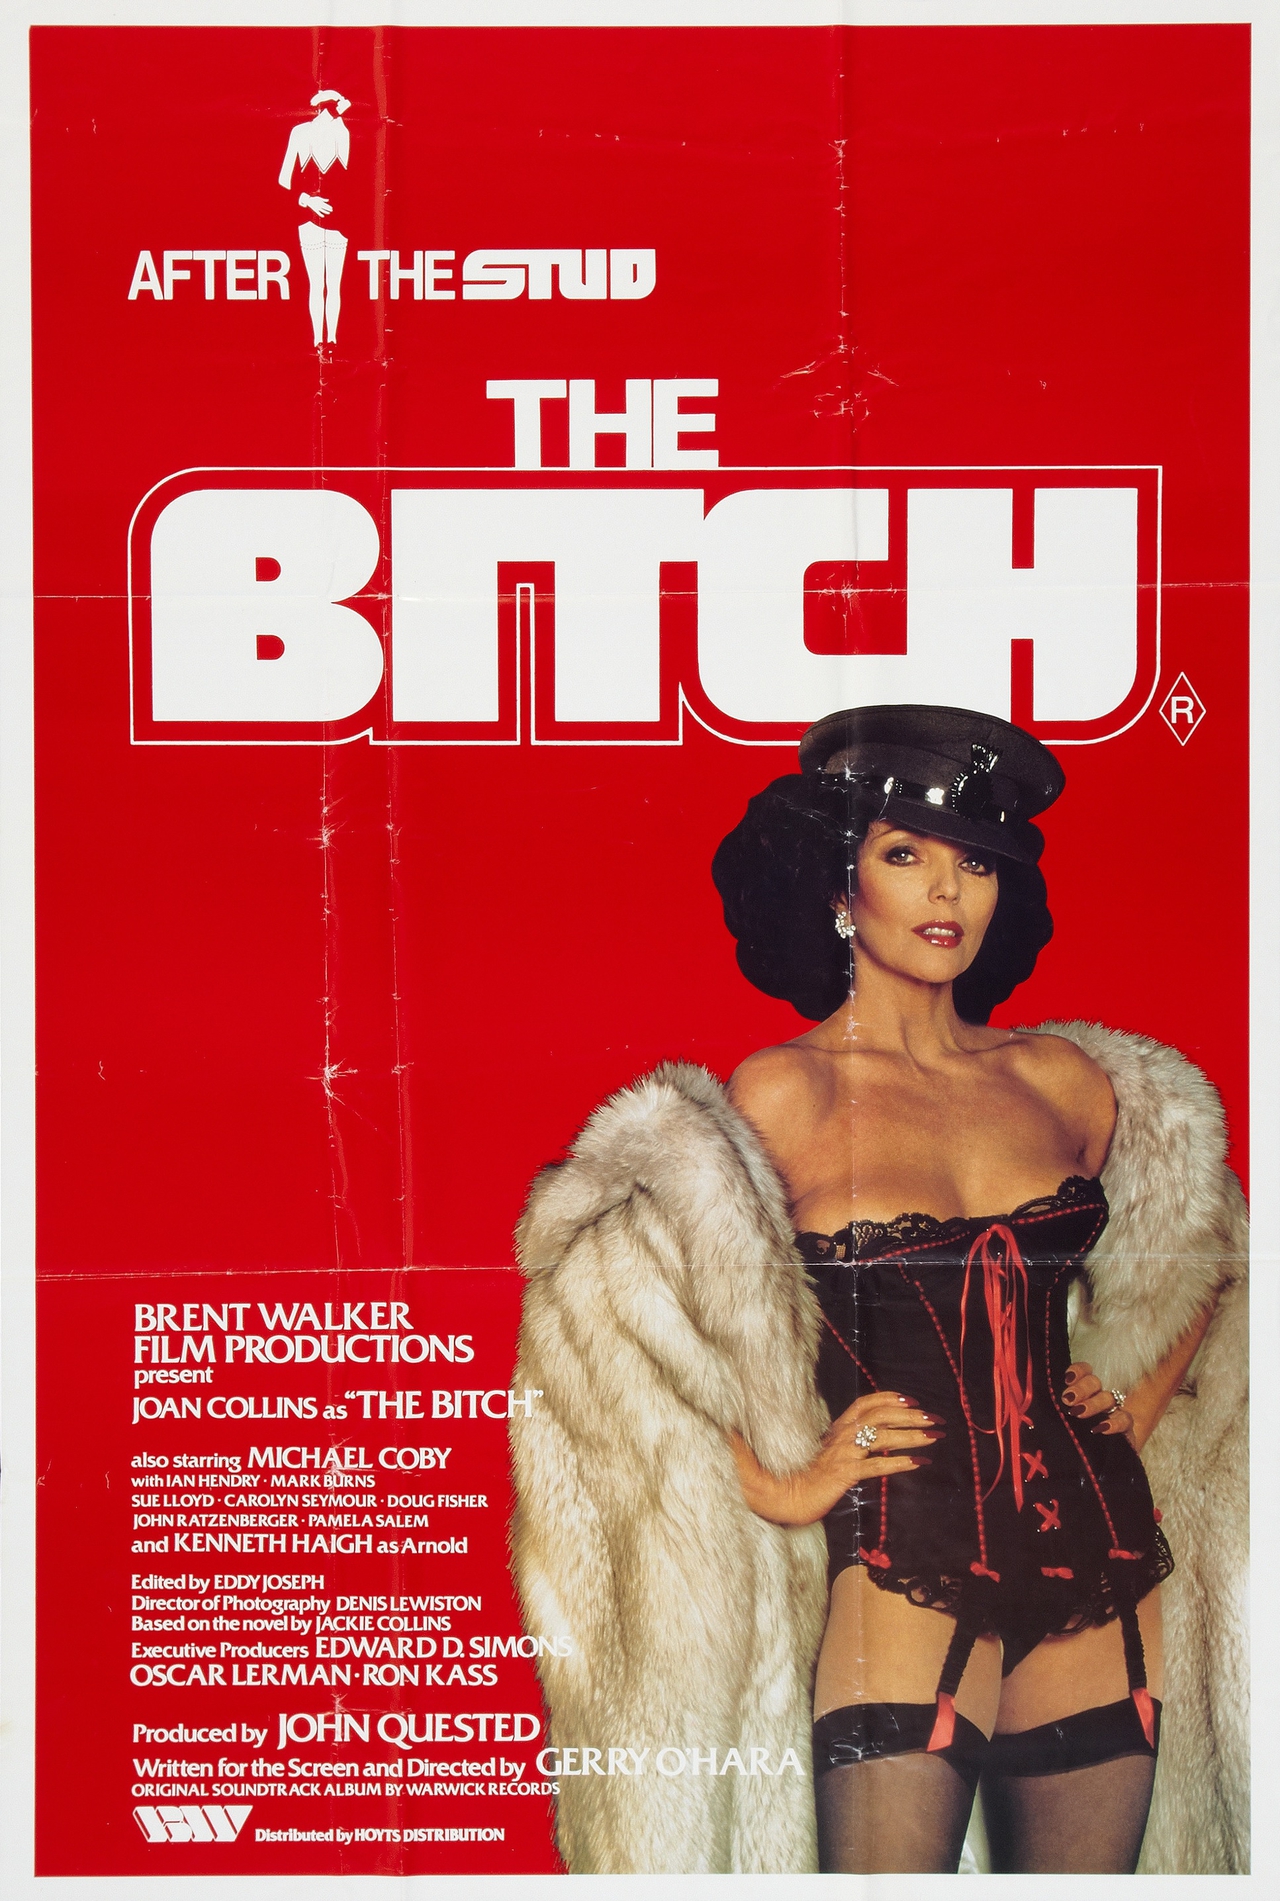  فیلم سینمایی The Bitch به کارگردانی Gerry O'Hara